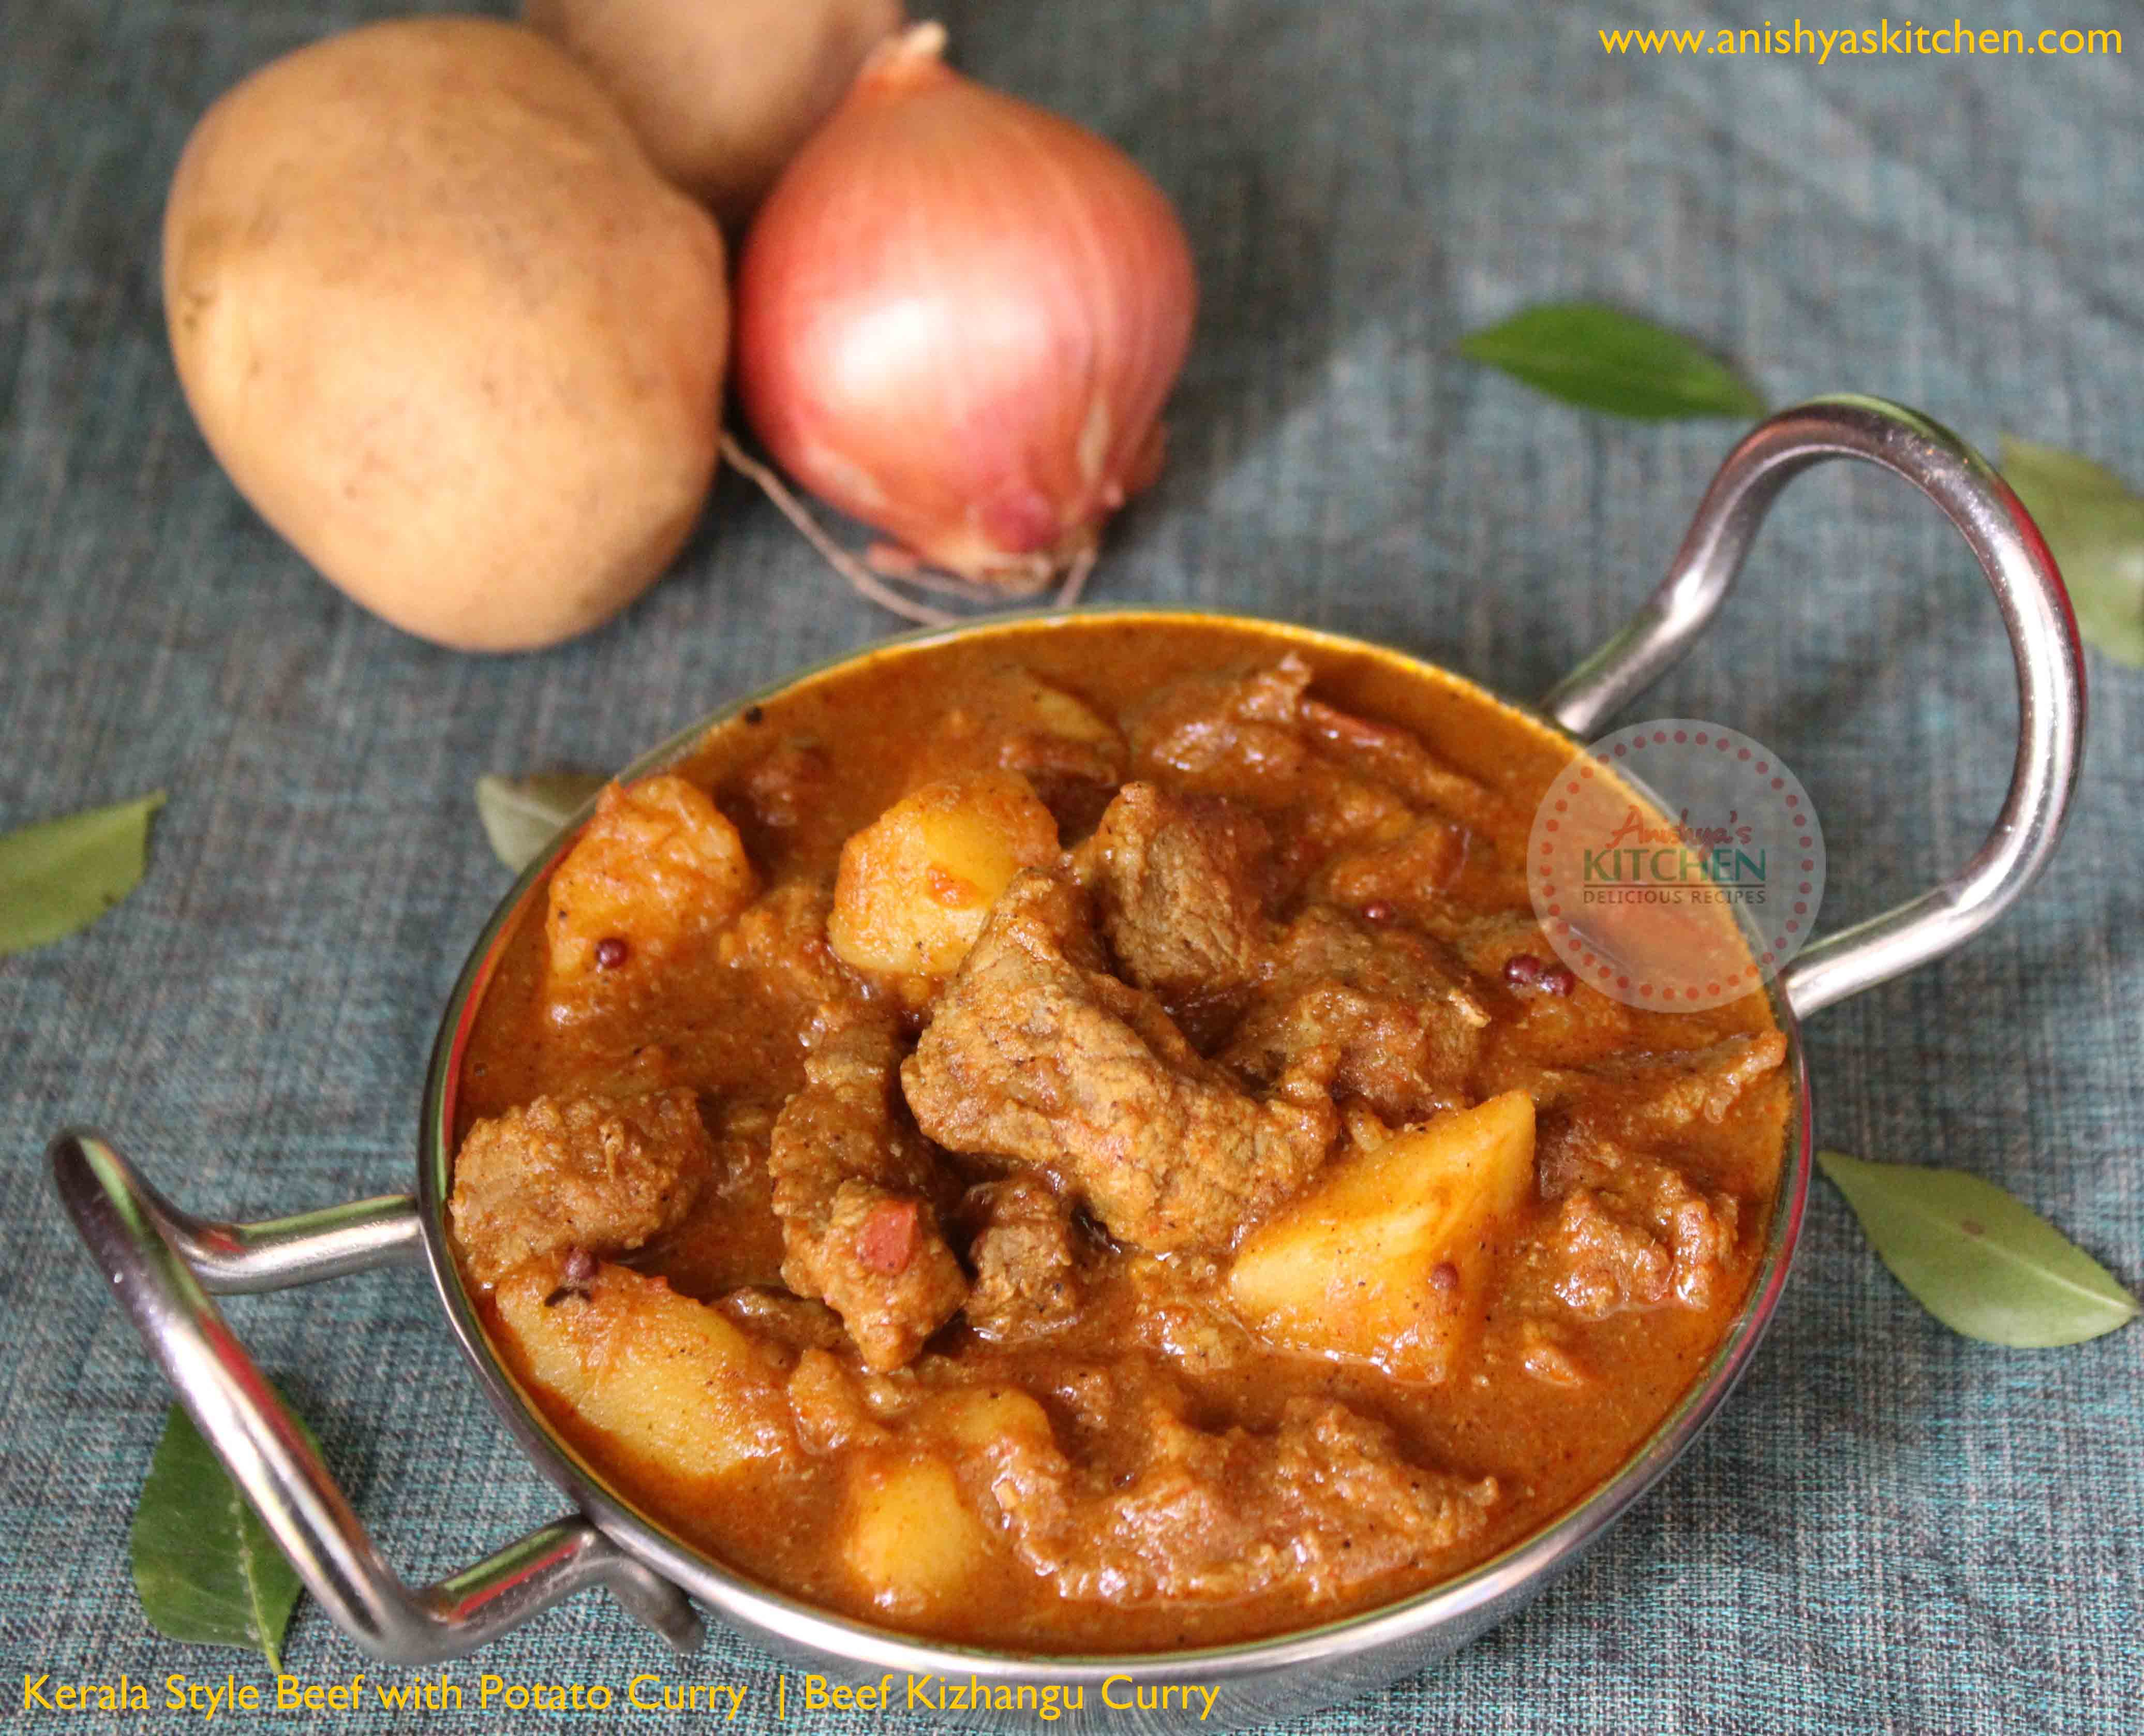 Kerala Style Beef with Potato Curry - Beef Kizhangu Curry